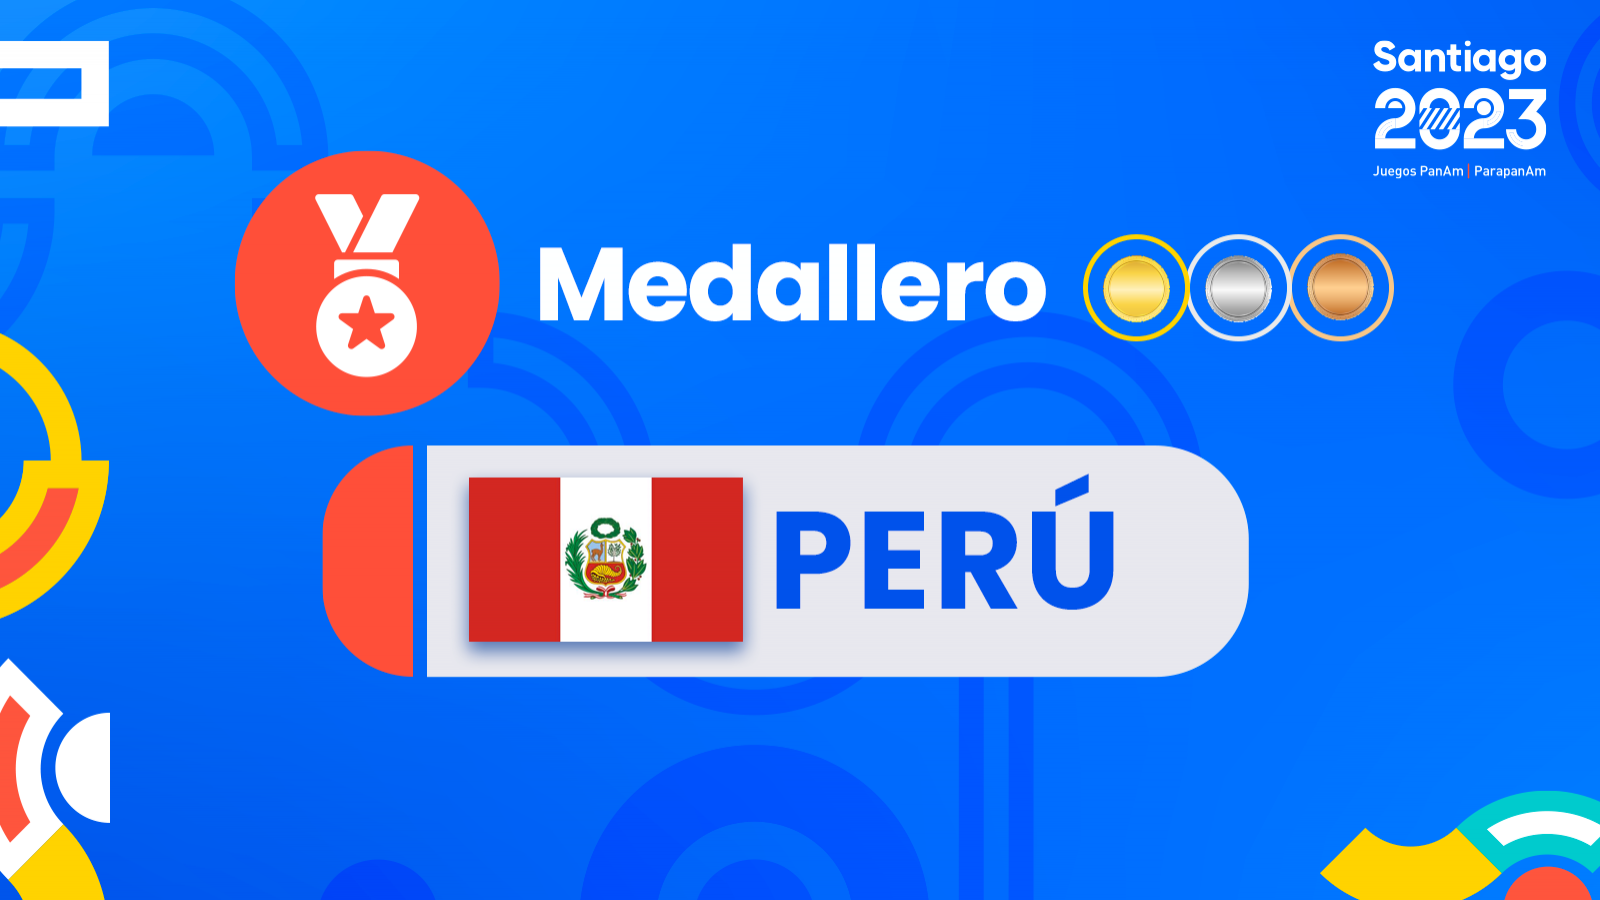 Medallas y medallero Perú juegos panamericanos Santiago 2023.